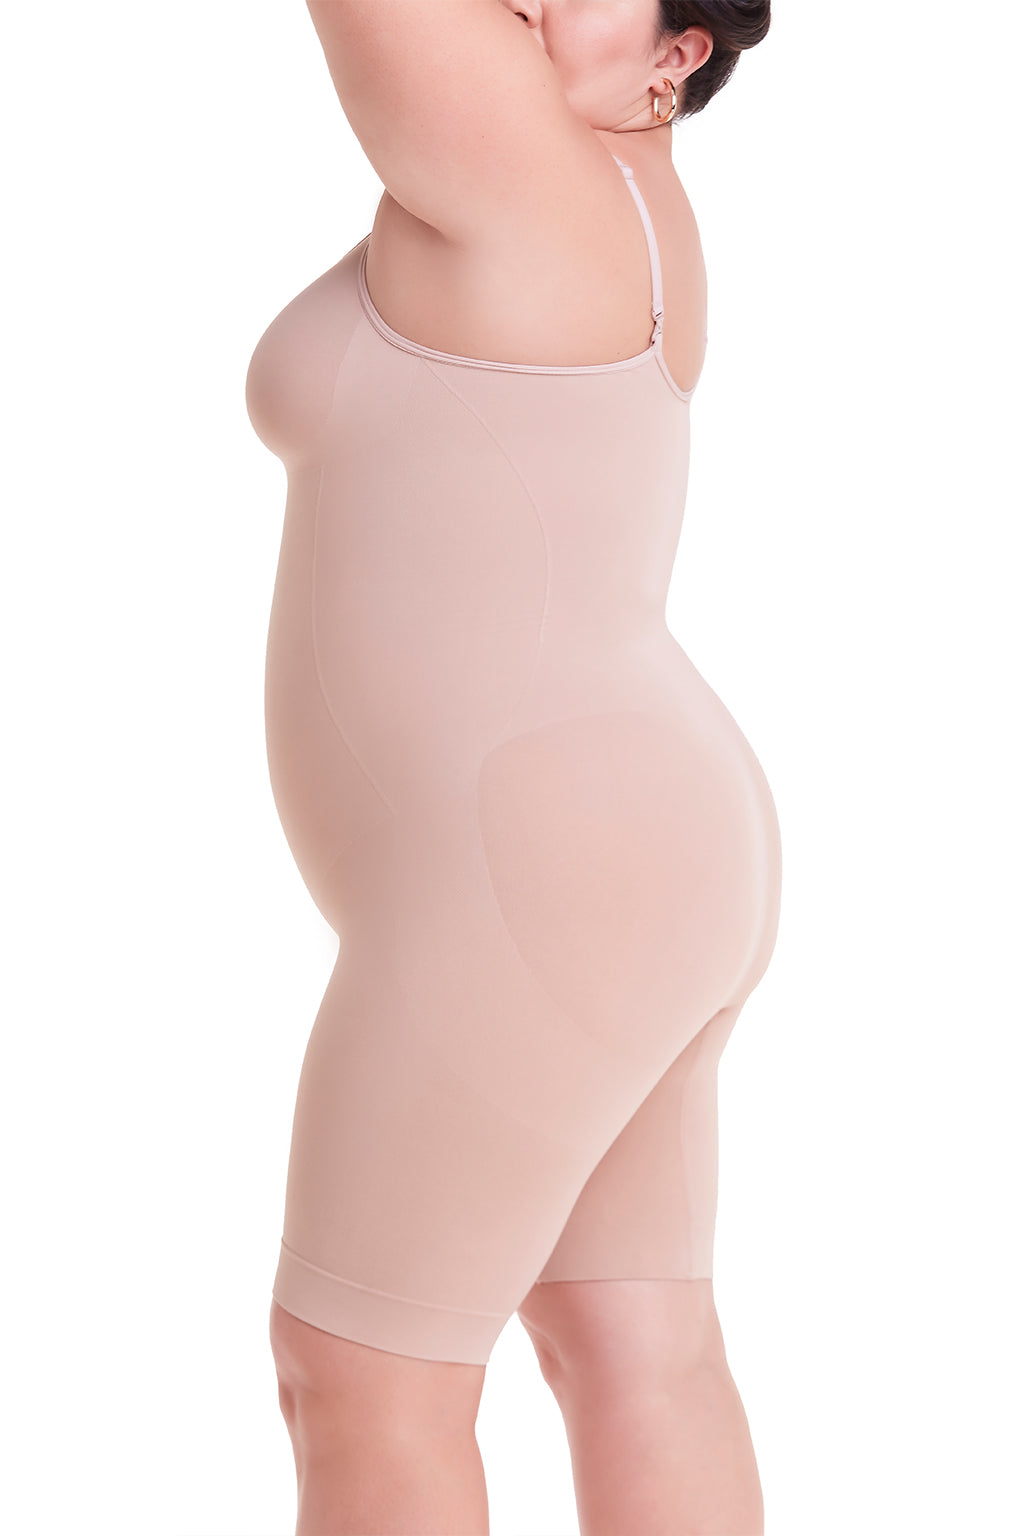 Body Shaper Seamless Corset Women Slimming Body Fajas Seamless Corset  Shapewear Shapers Color Skin size L XL 50-60KG